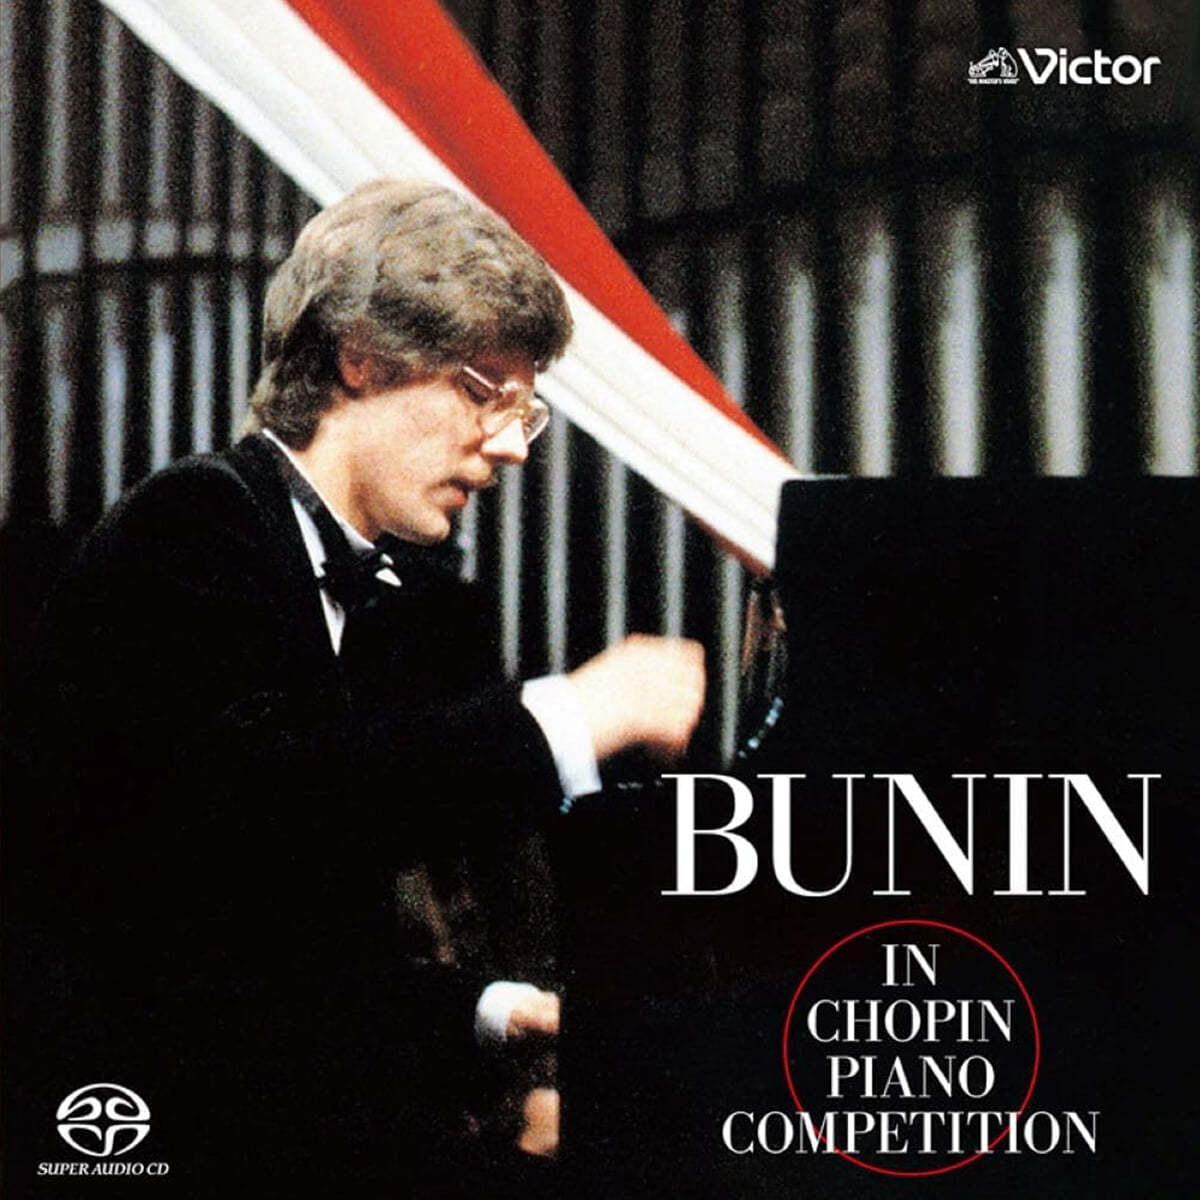 스타니슬라브 부닌 쇼팽 콩쿠르 라이브 (Bunin in Chopin Piano Competition)